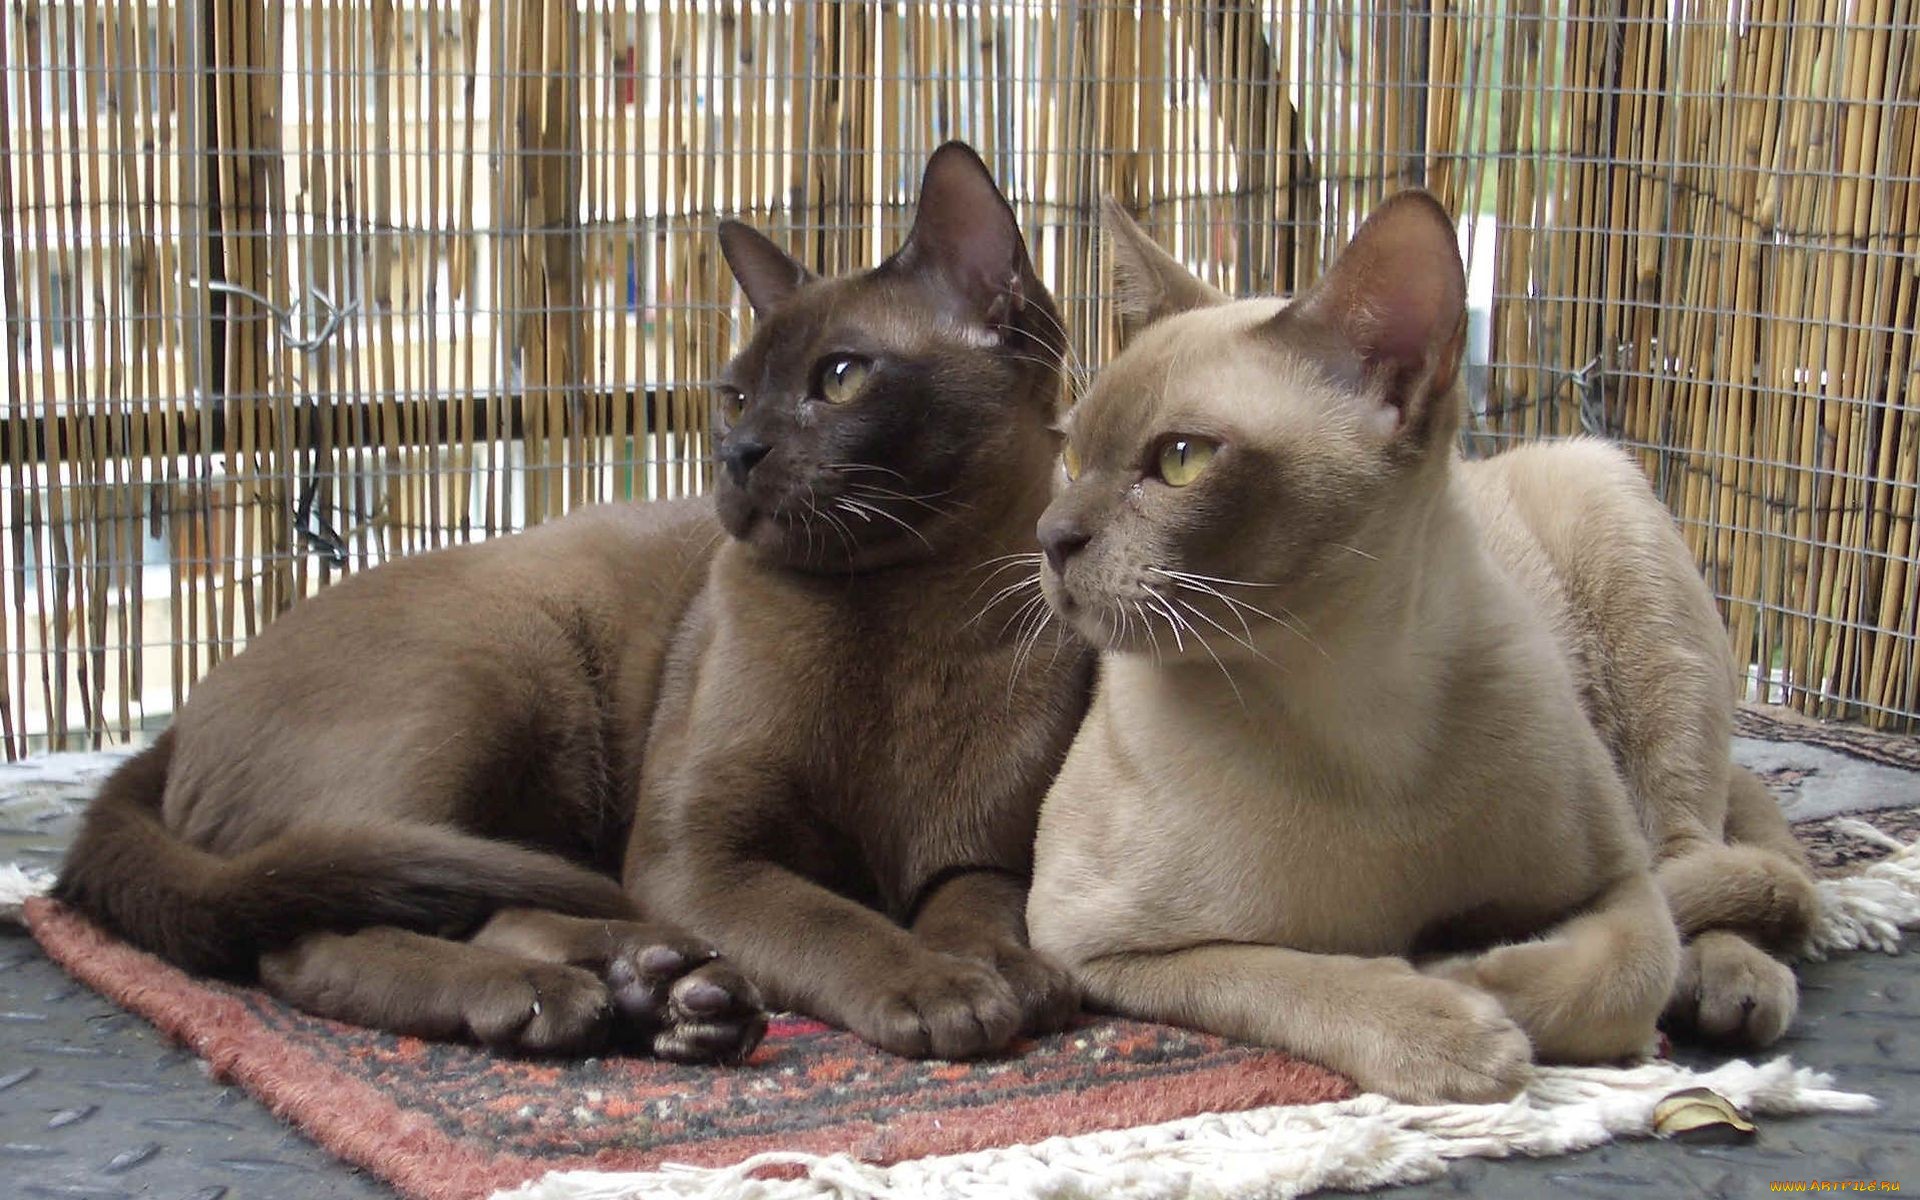 A pair of Burmese cats